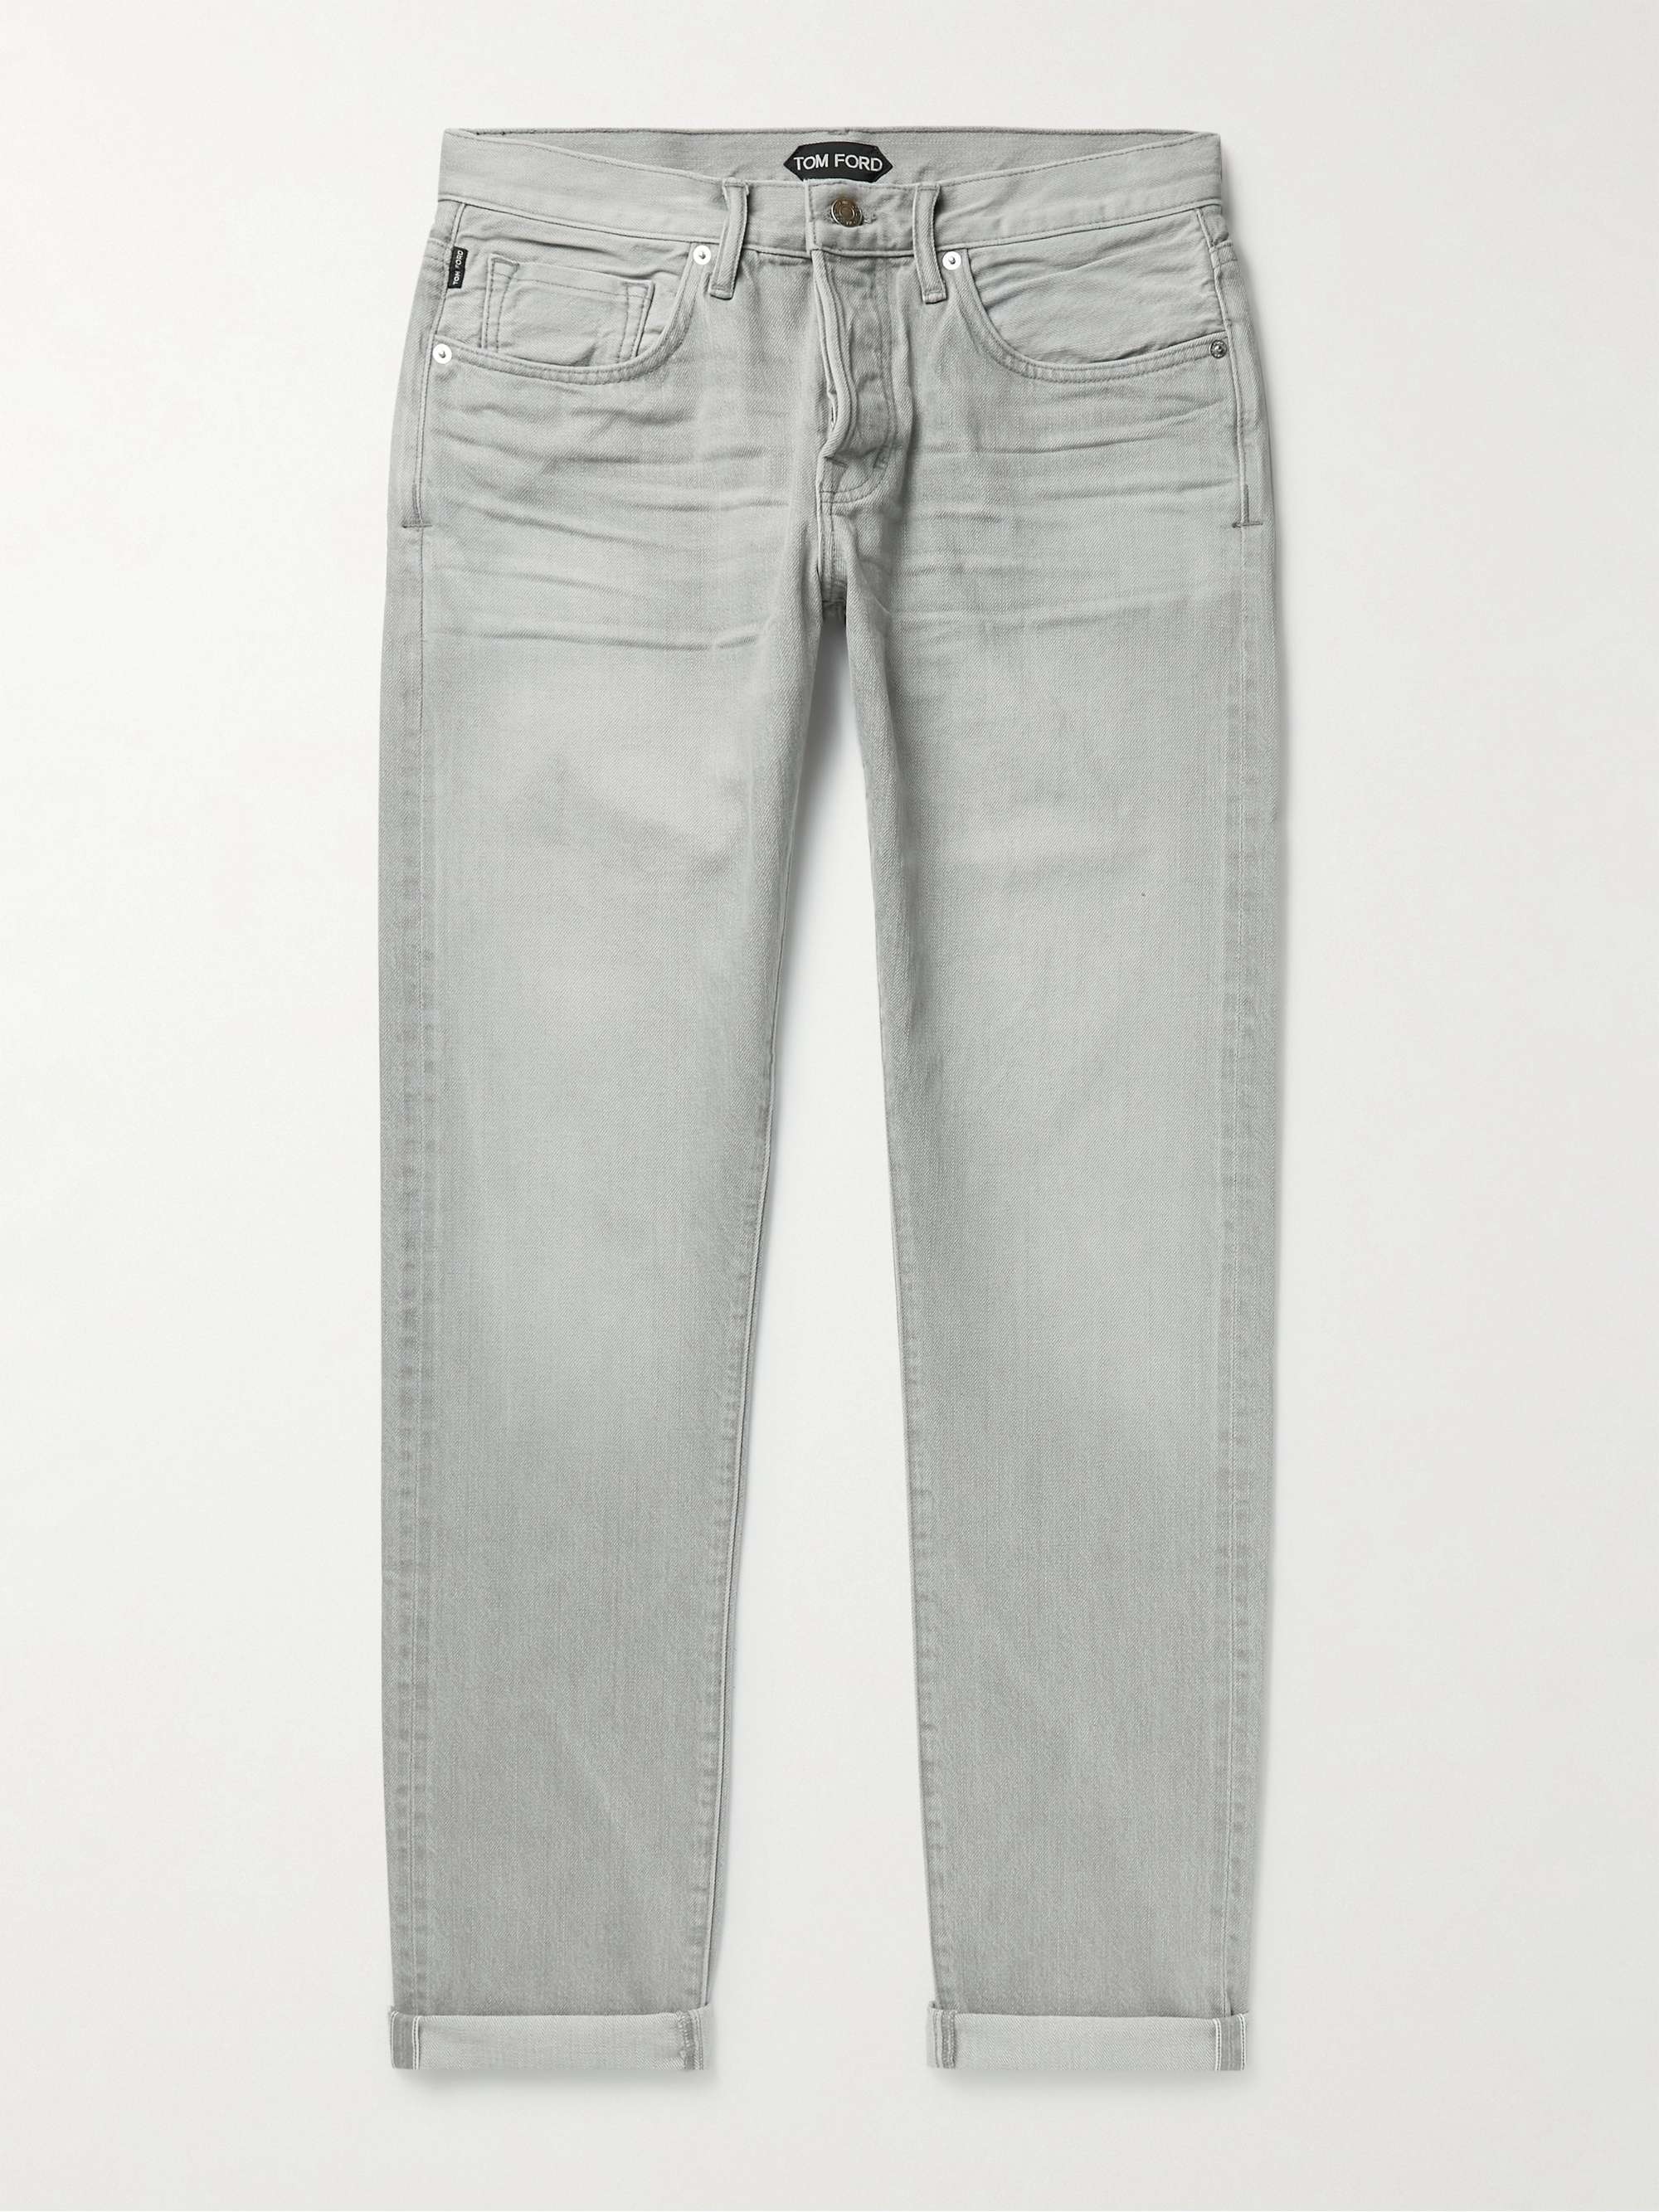 slette Gør gulvet rent enorm TOM FORD Slim-Fit Selvedge Jeans for Men | MR PORTER